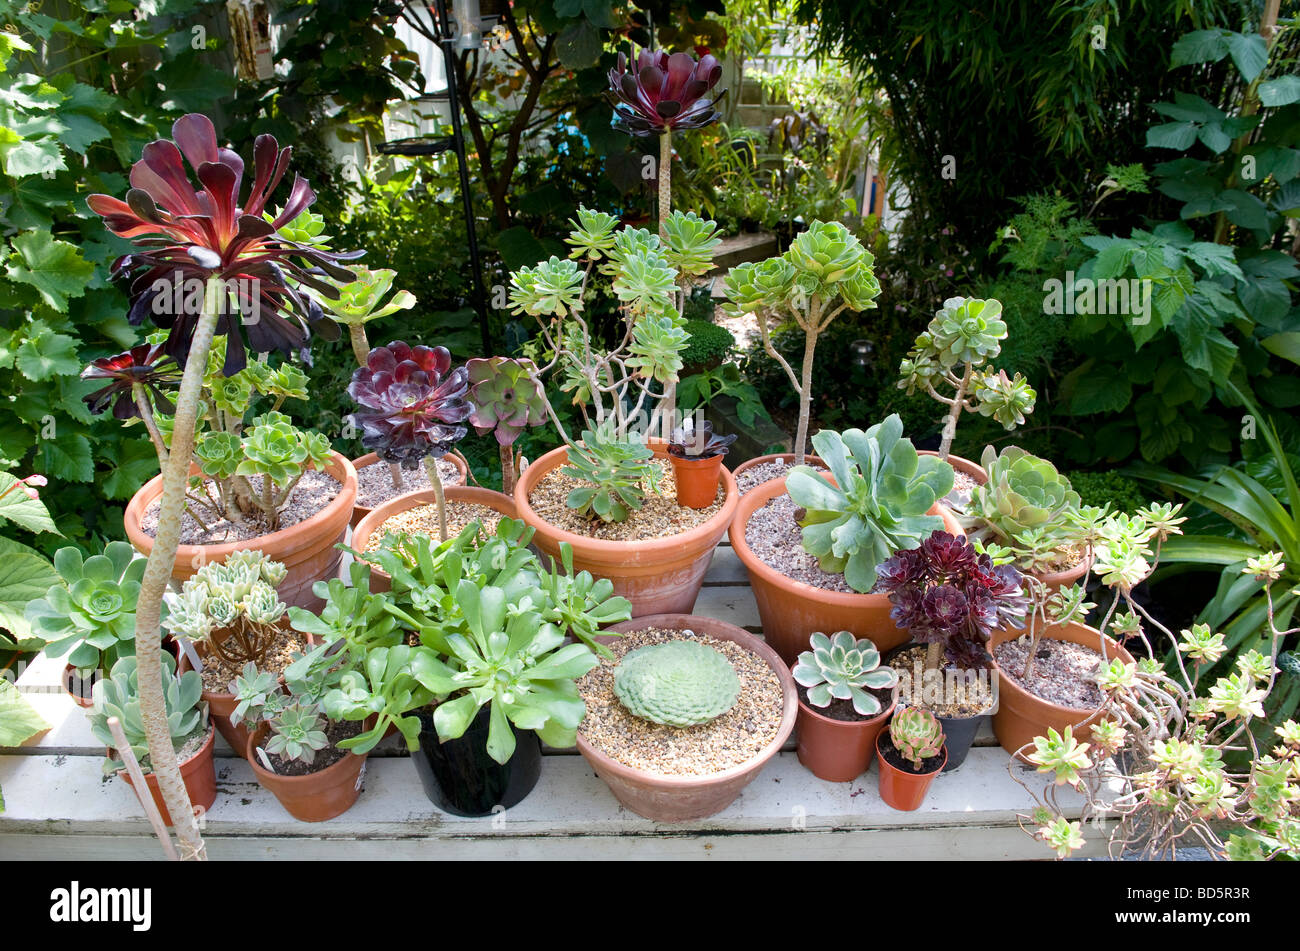 Auswahl der Aeonium Pflanzen in Töpfen Stockfoto